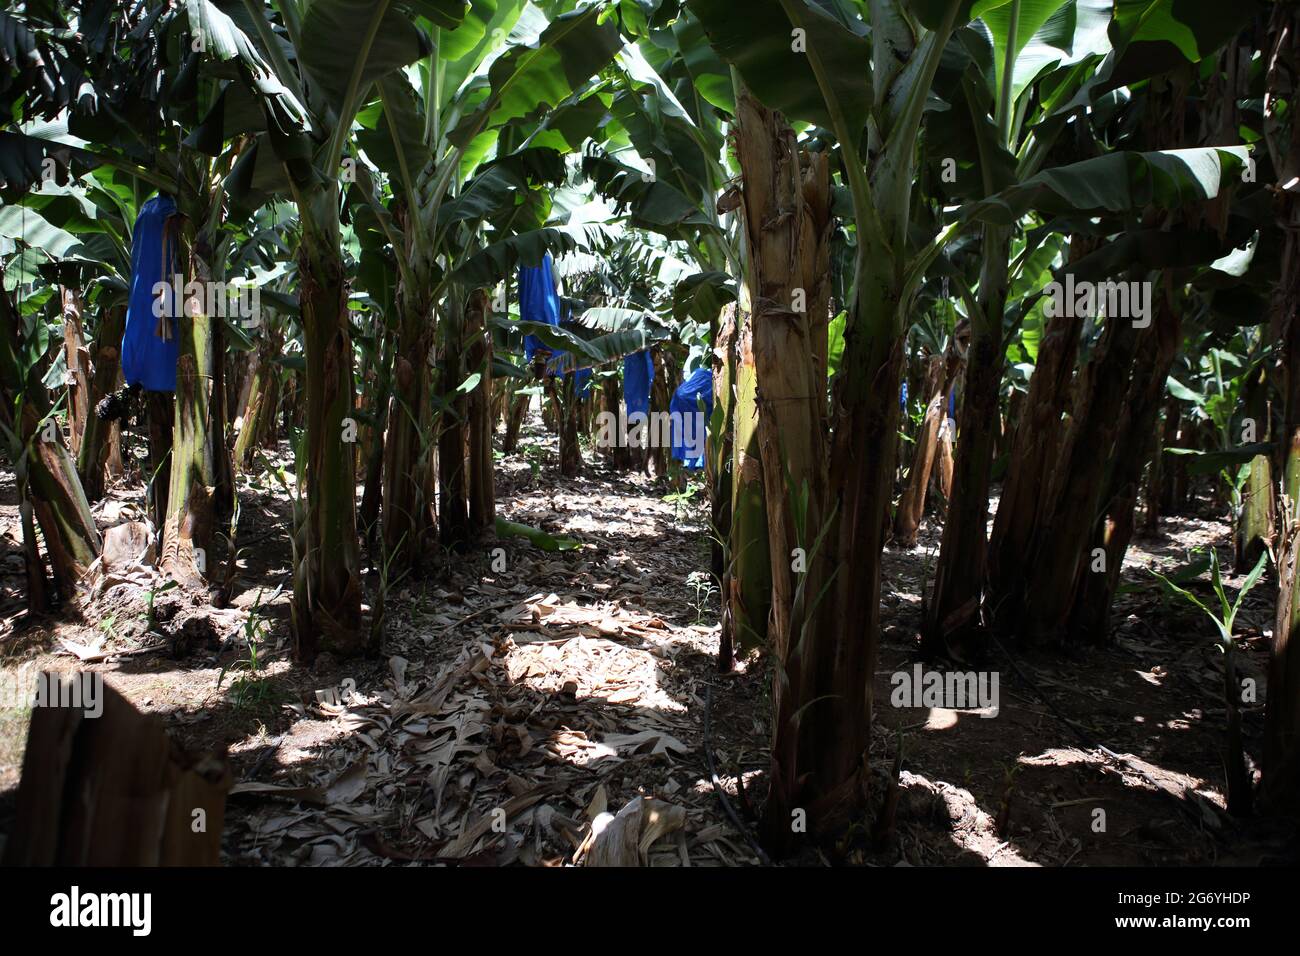 Banana piantagione, la pianta del genere Musa e della famiglia Musaceae porta frutti commestibili le partite sono coperte di sacchetti di plastica blu, Costa del Carmelo. Foto Stock